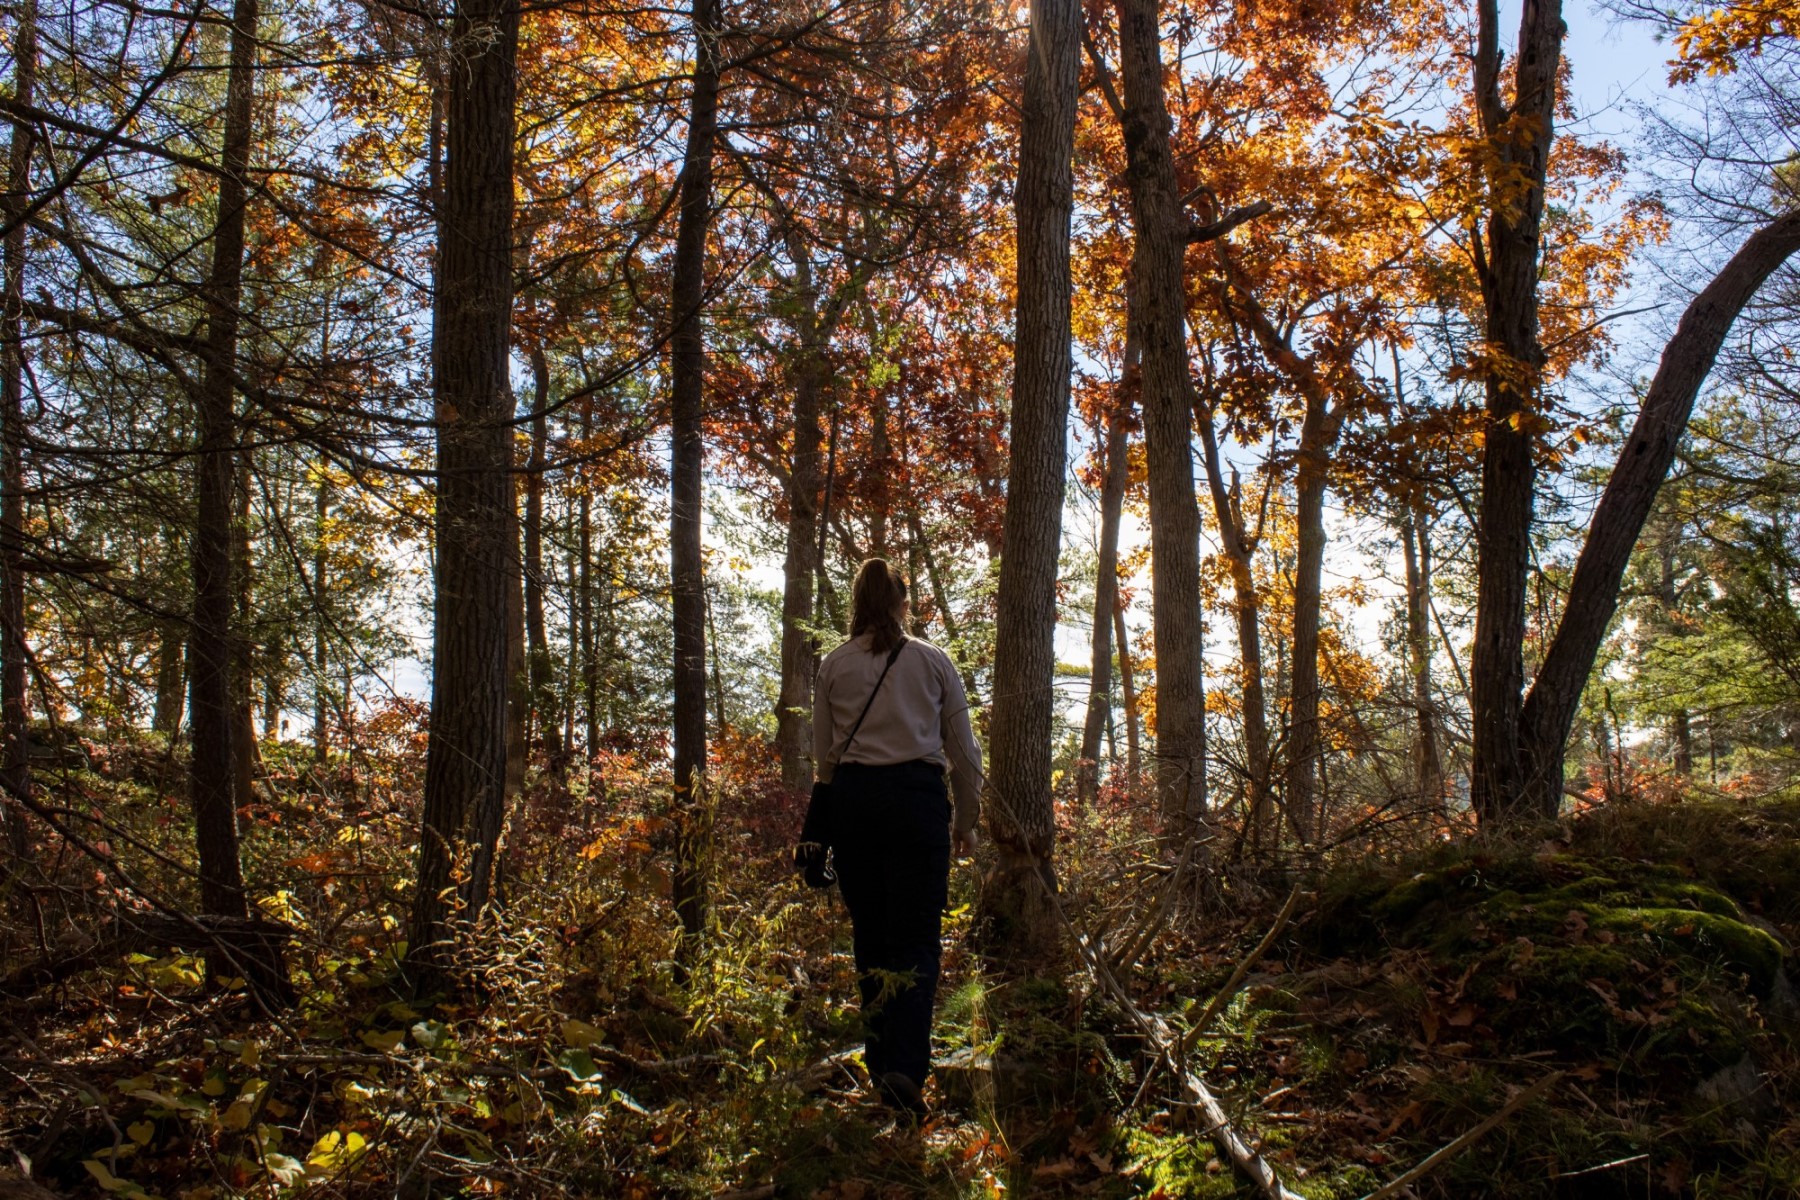 Un membre du personnel de Parcs Ontario s'éloignant de la caméra dans une forêt aux couleurs d'automne, entouré d'arbres imposants